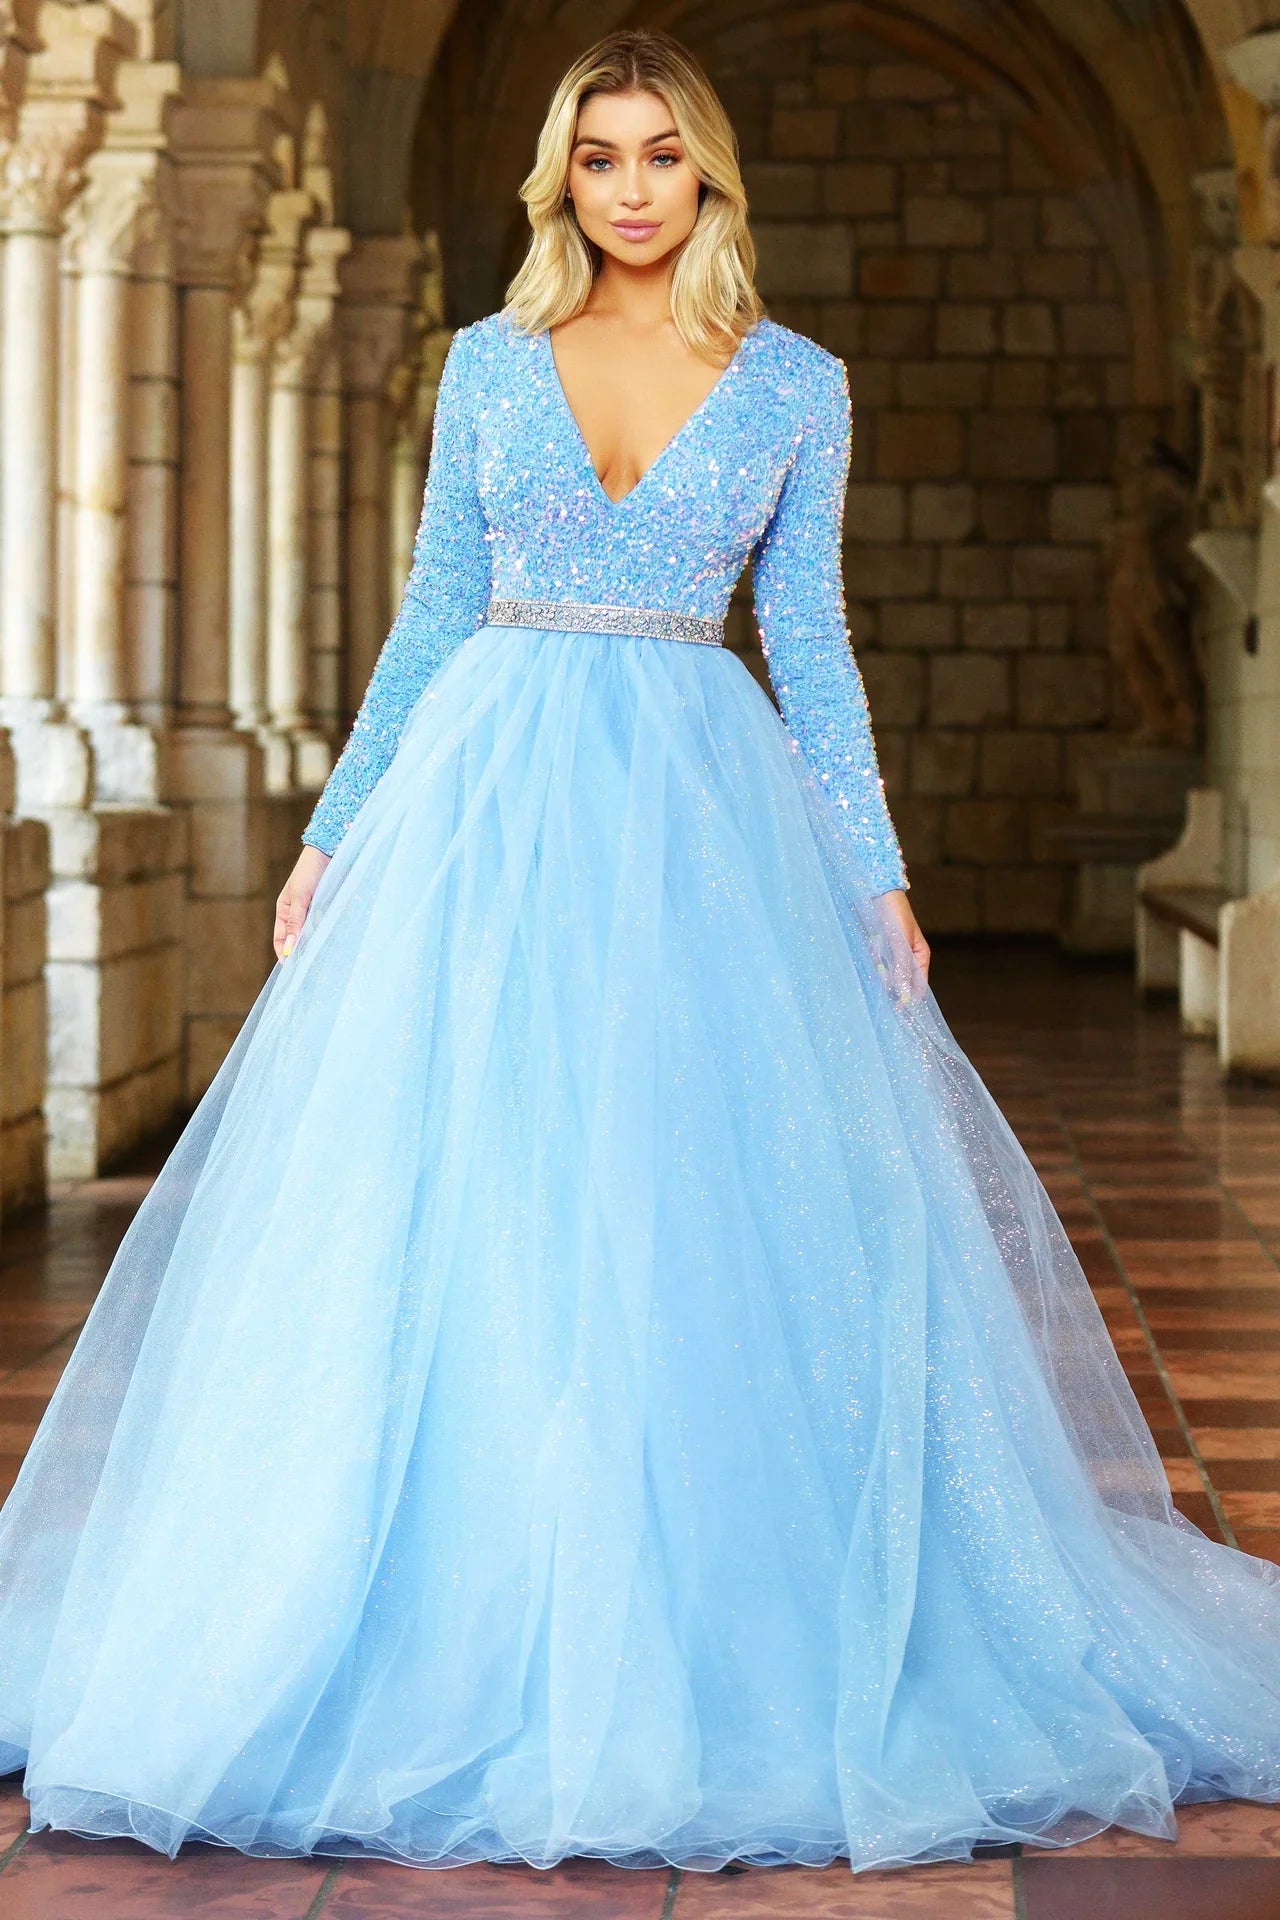 Sparkly Long Sleeve Lace A-Line Wedding Dress | Sophia Tolli Liliana  Y12241SL